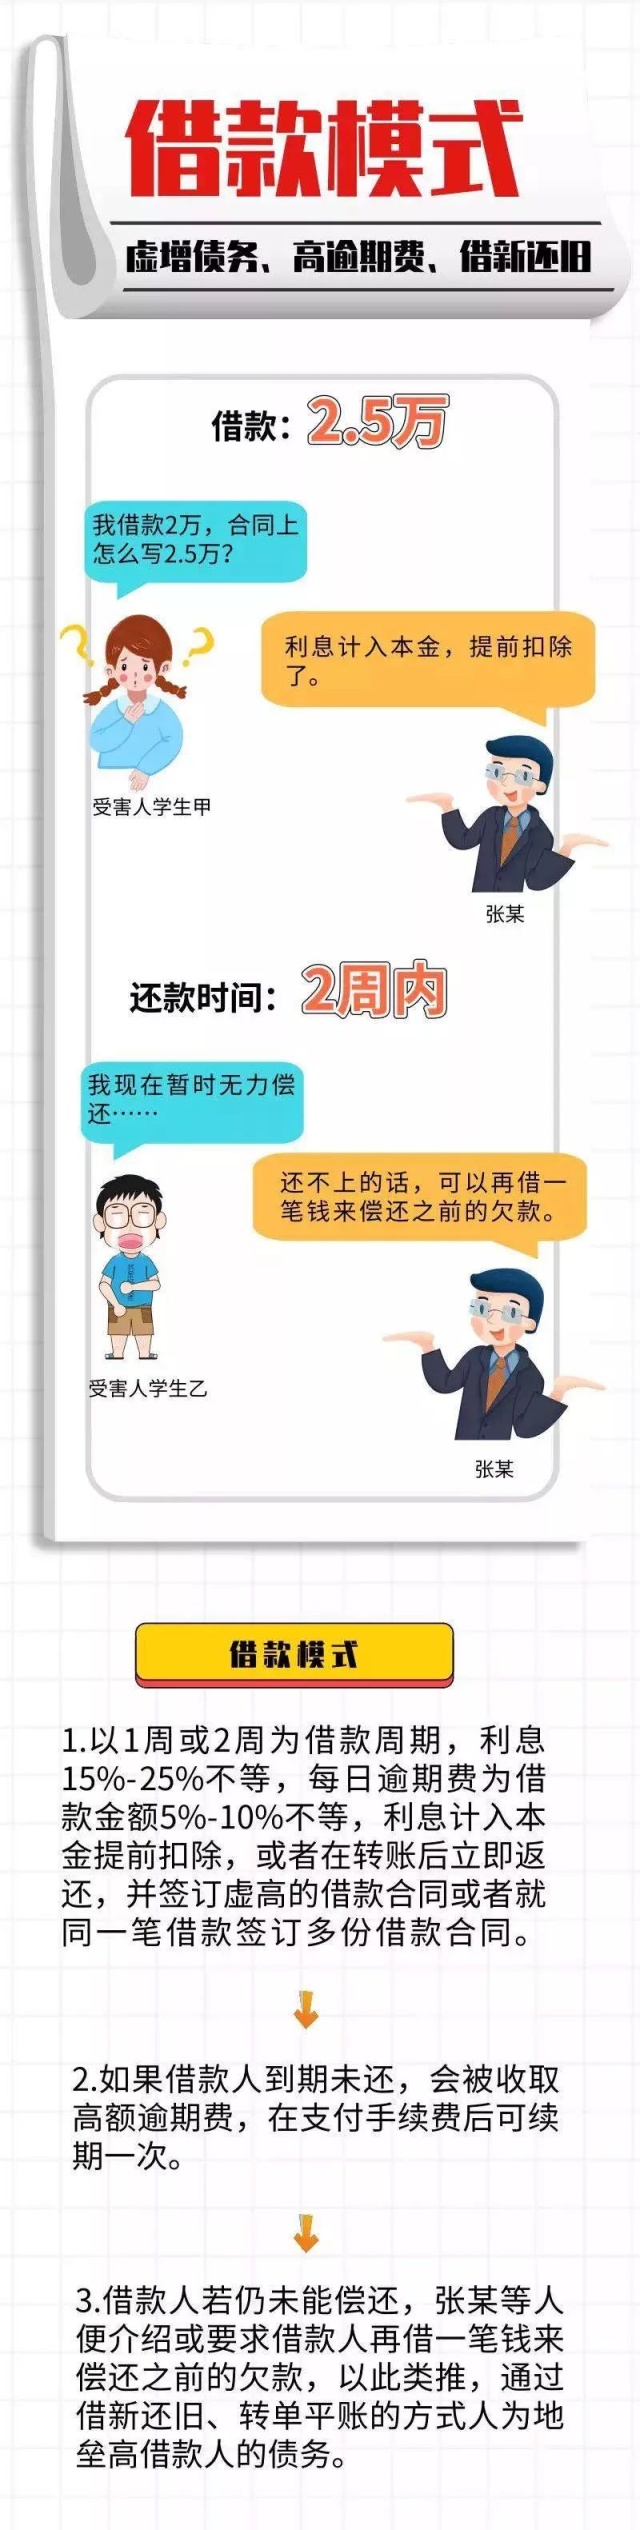 深圳首宗非法“校园贷”案宣判 诈骗套路曝光